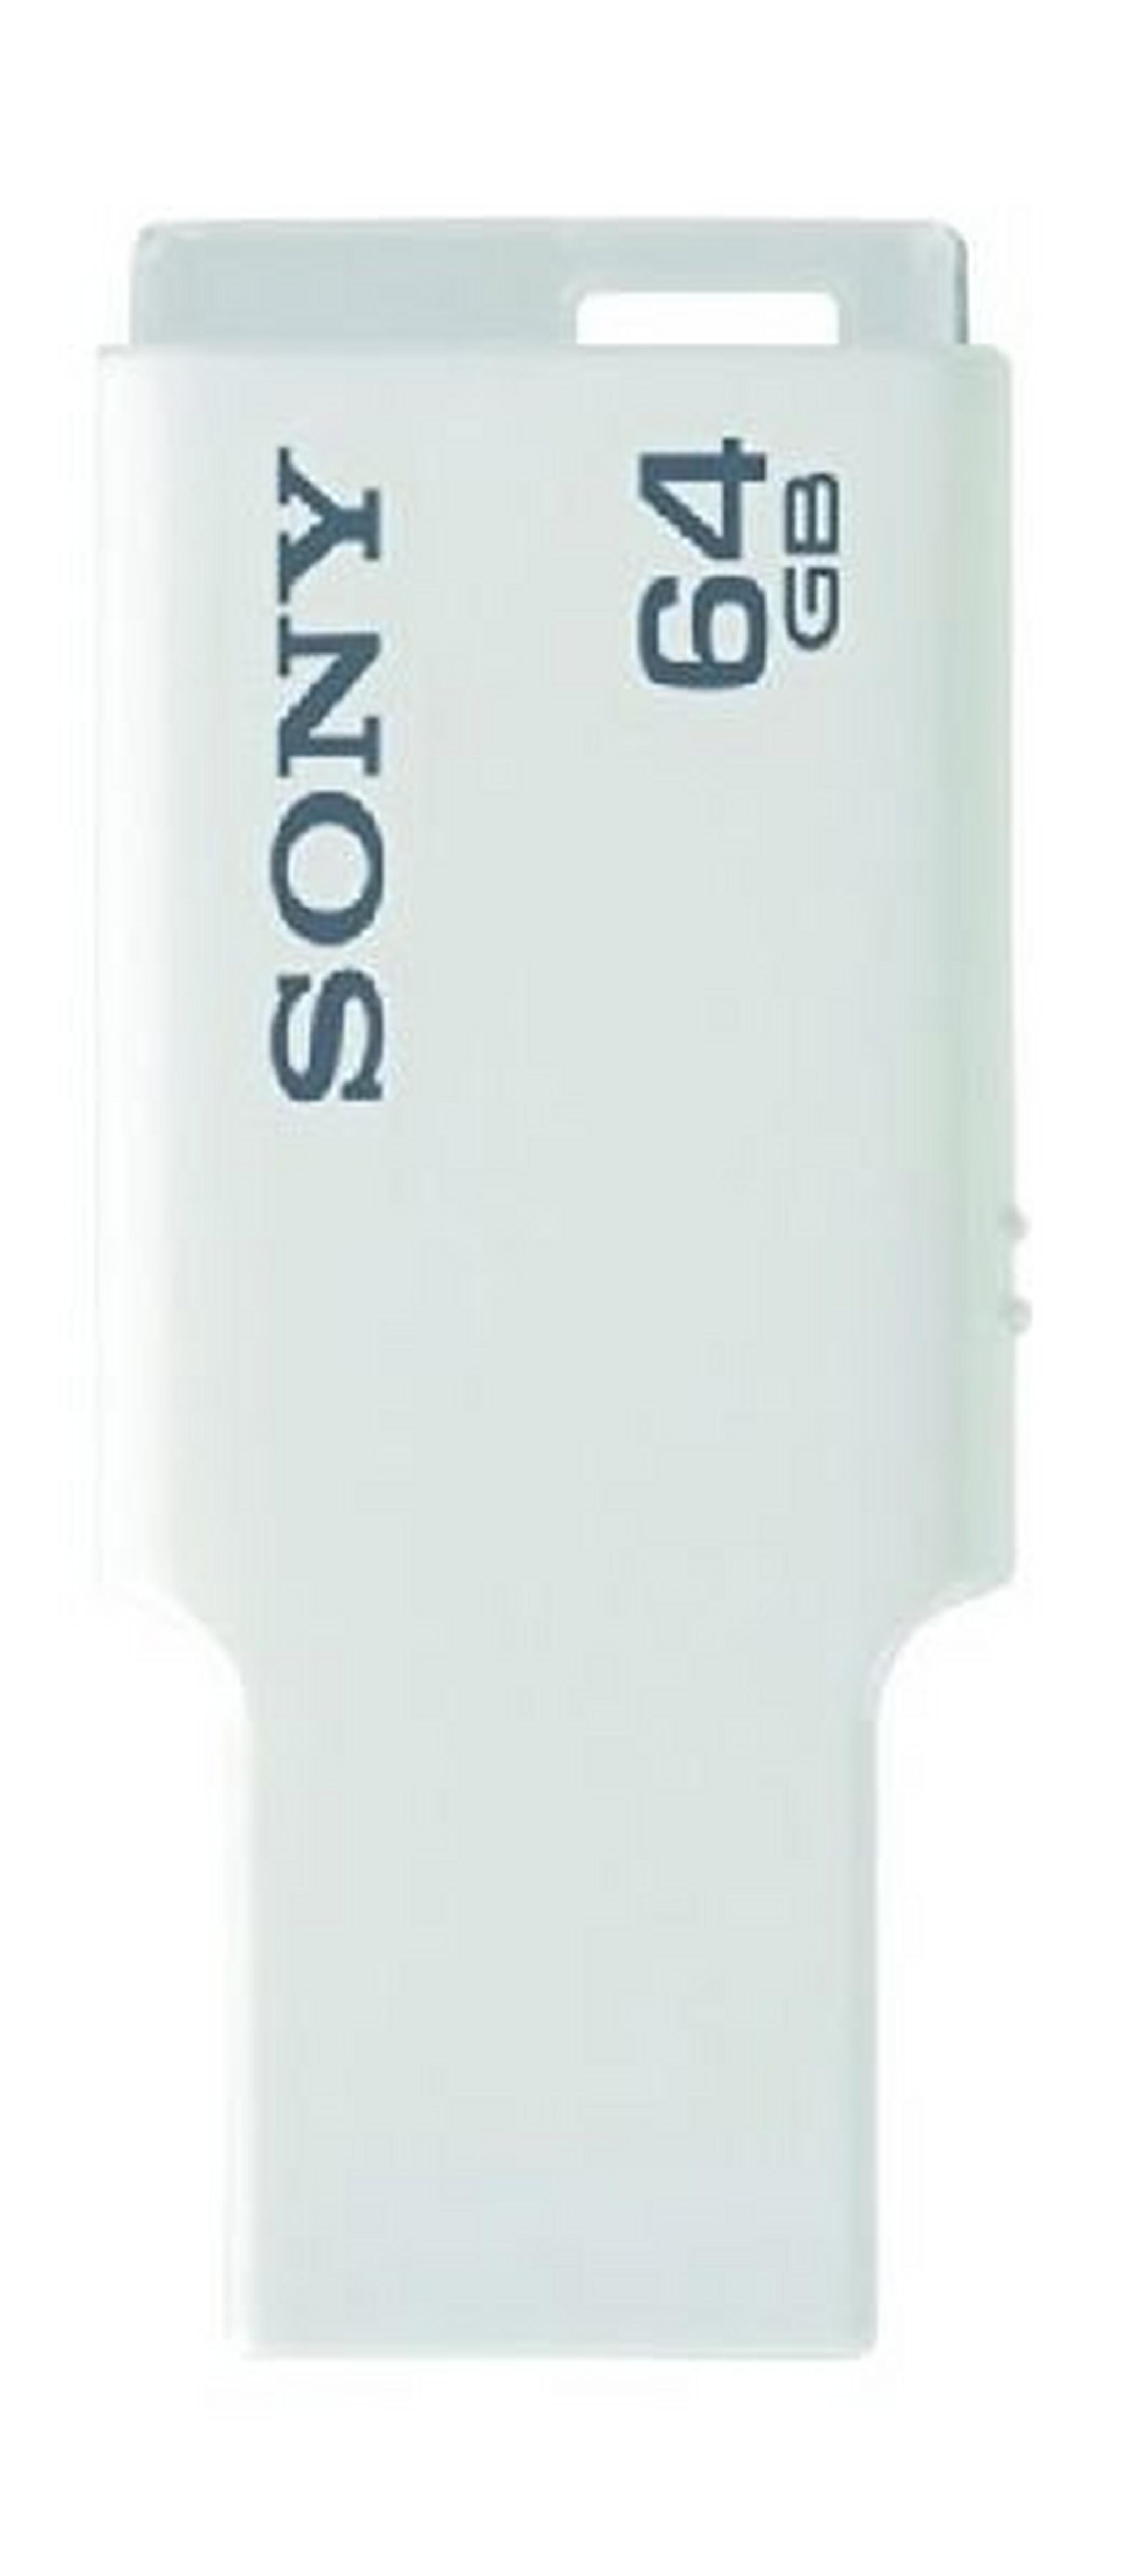 Sony 64GB Micro Vault M-Series USB Flash Drive (USM64M1) - White